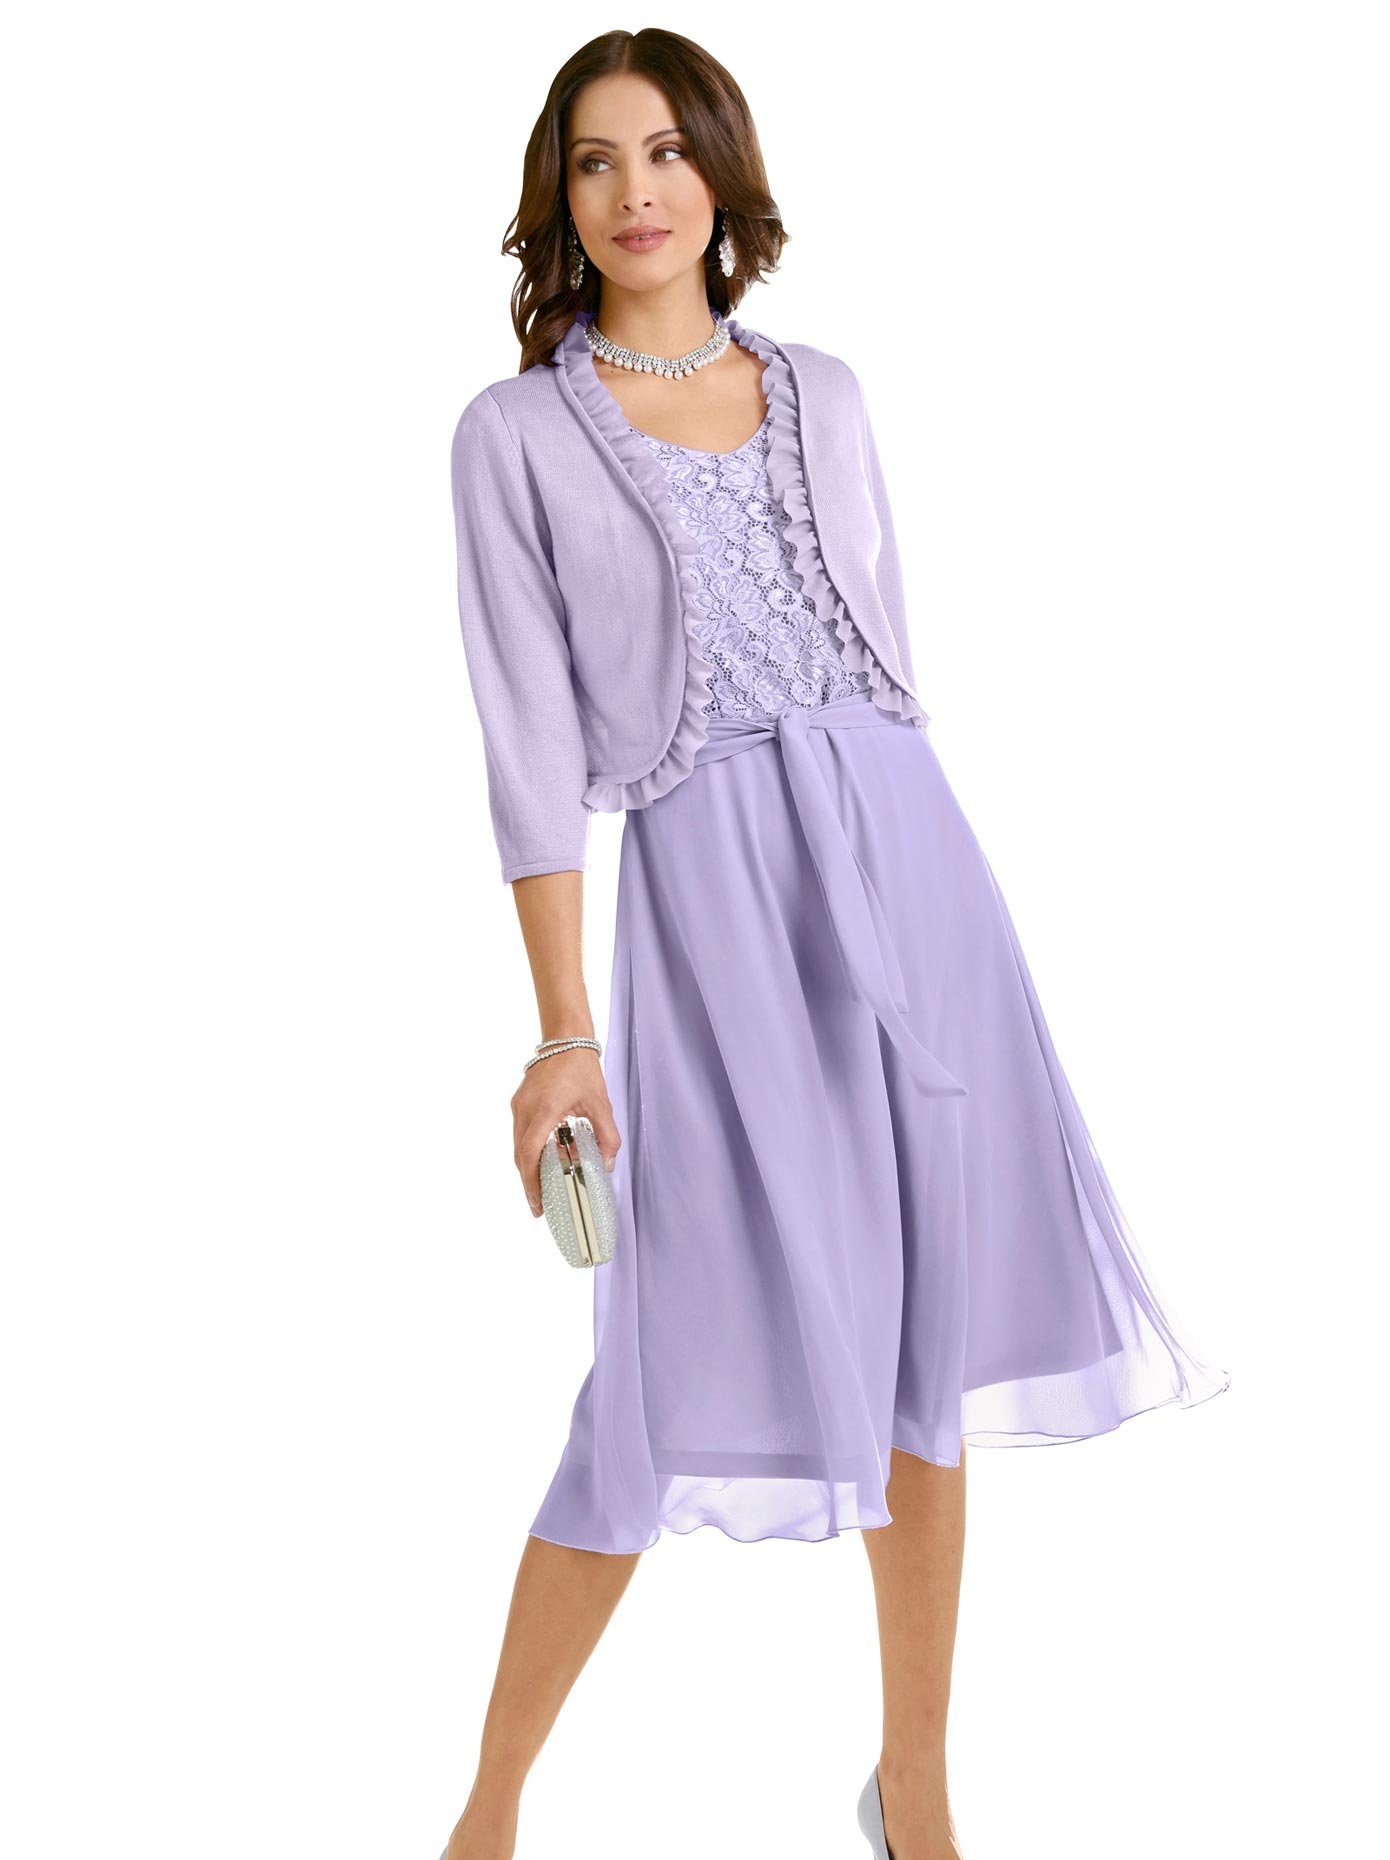 Lila Kleid online kaufen | OTTO